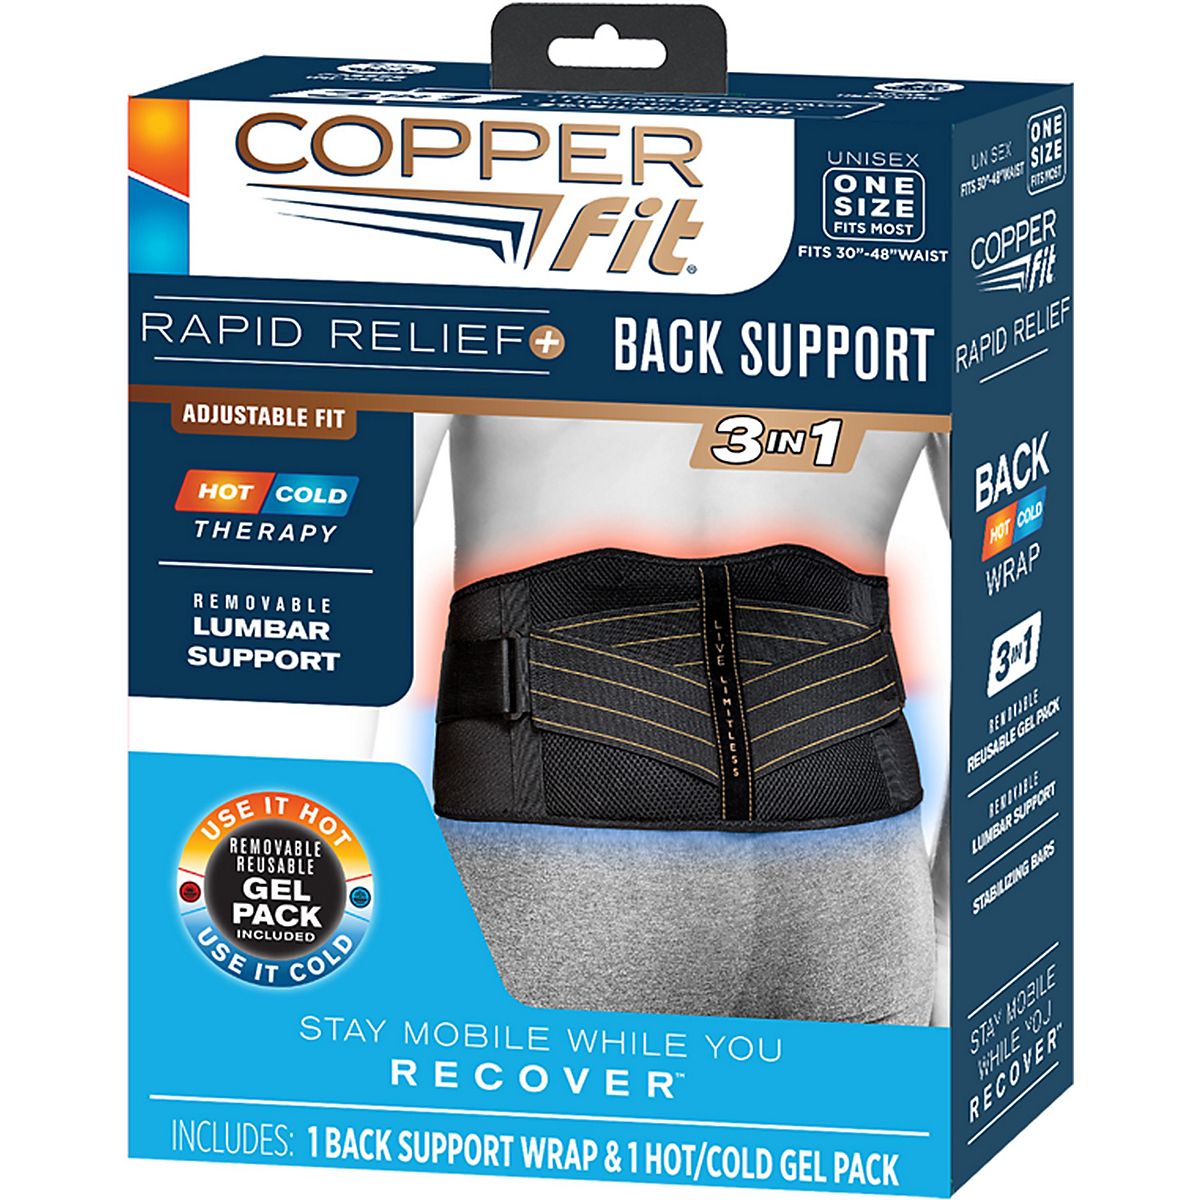 Copper Fit® Back Brace, Adjustable